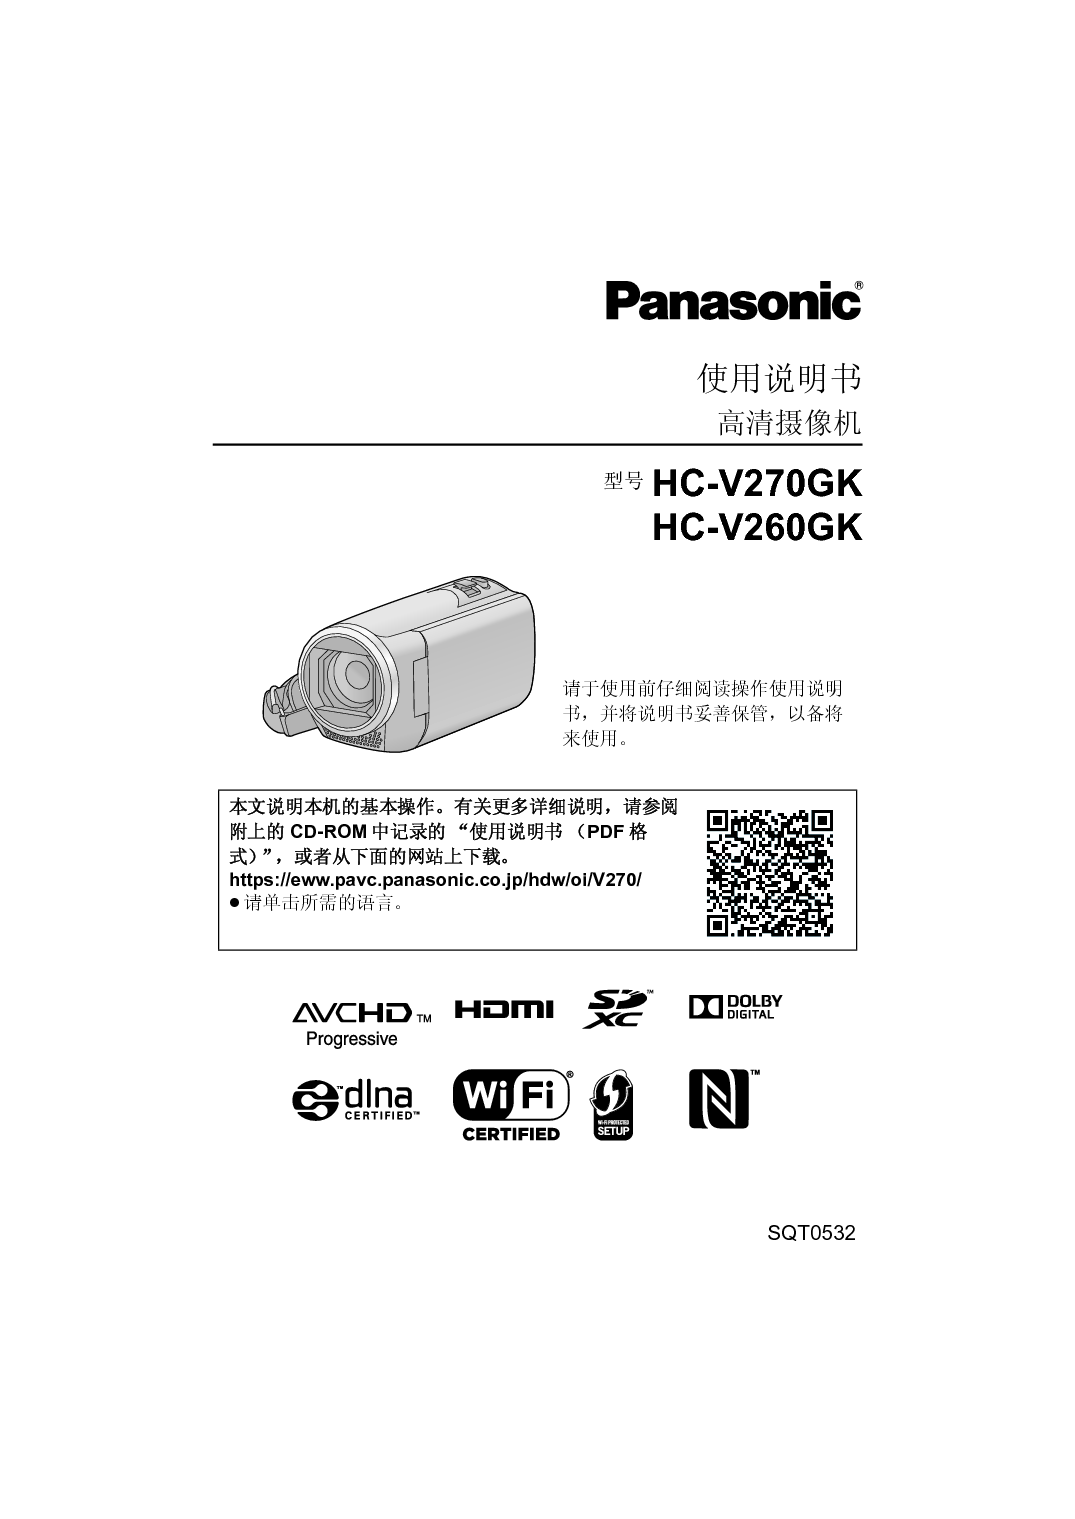 松下 Panasonic HC-V260GK 使用说明书 封面